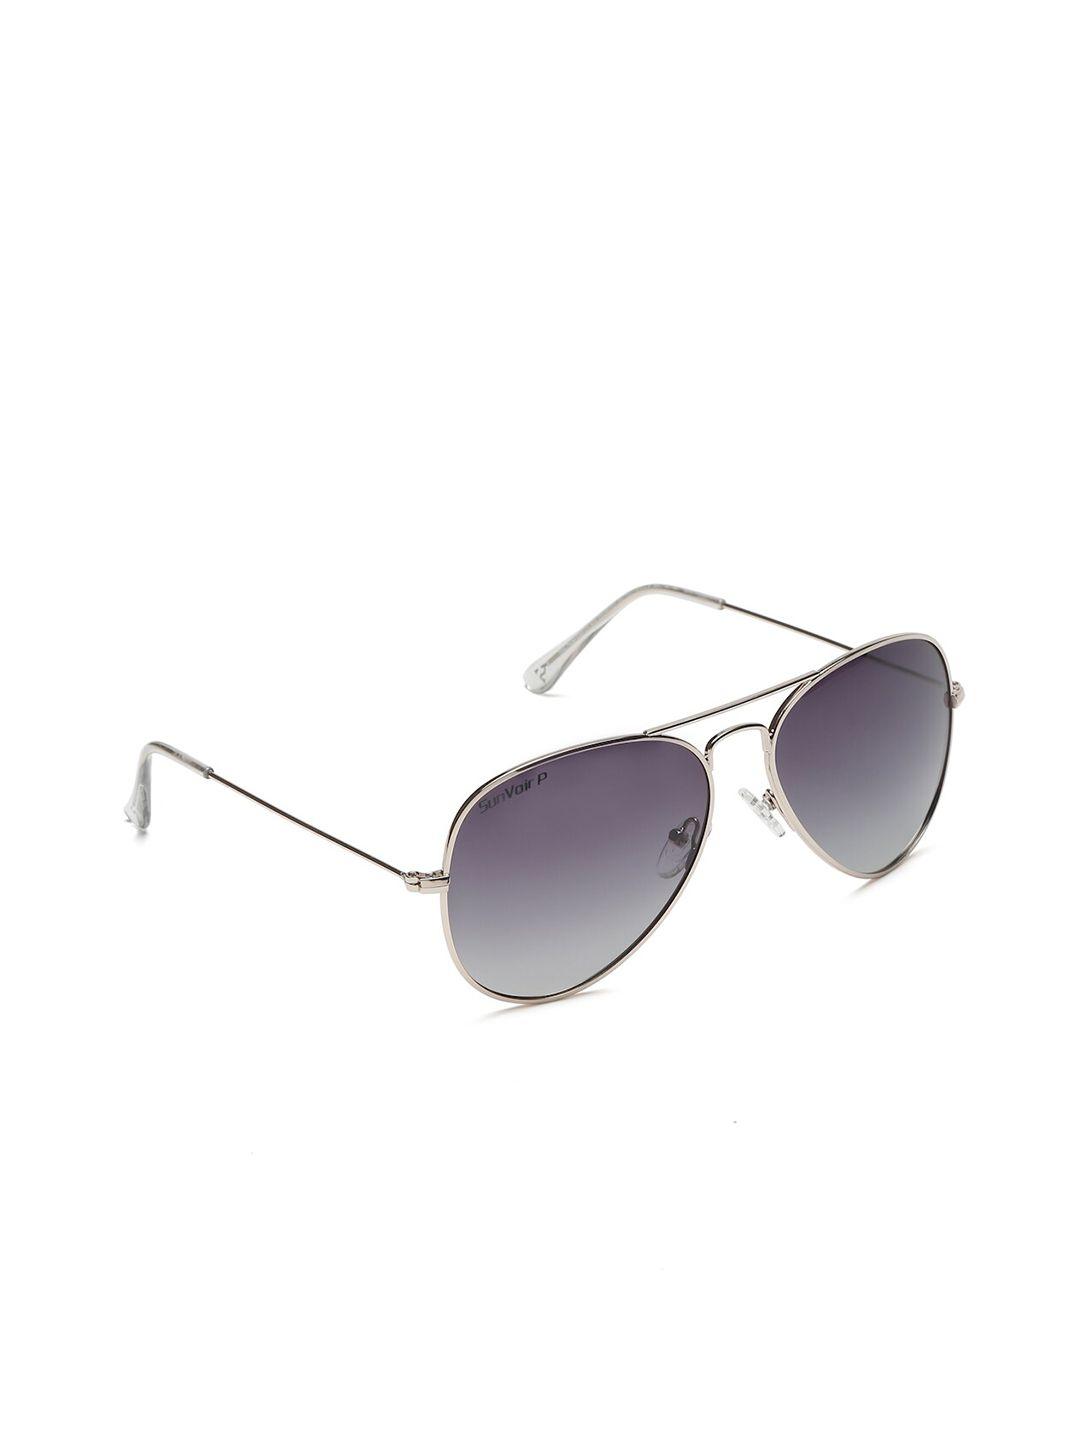 sunnies full rim aviator sunglasses with polarised lens sunnies-020-c5